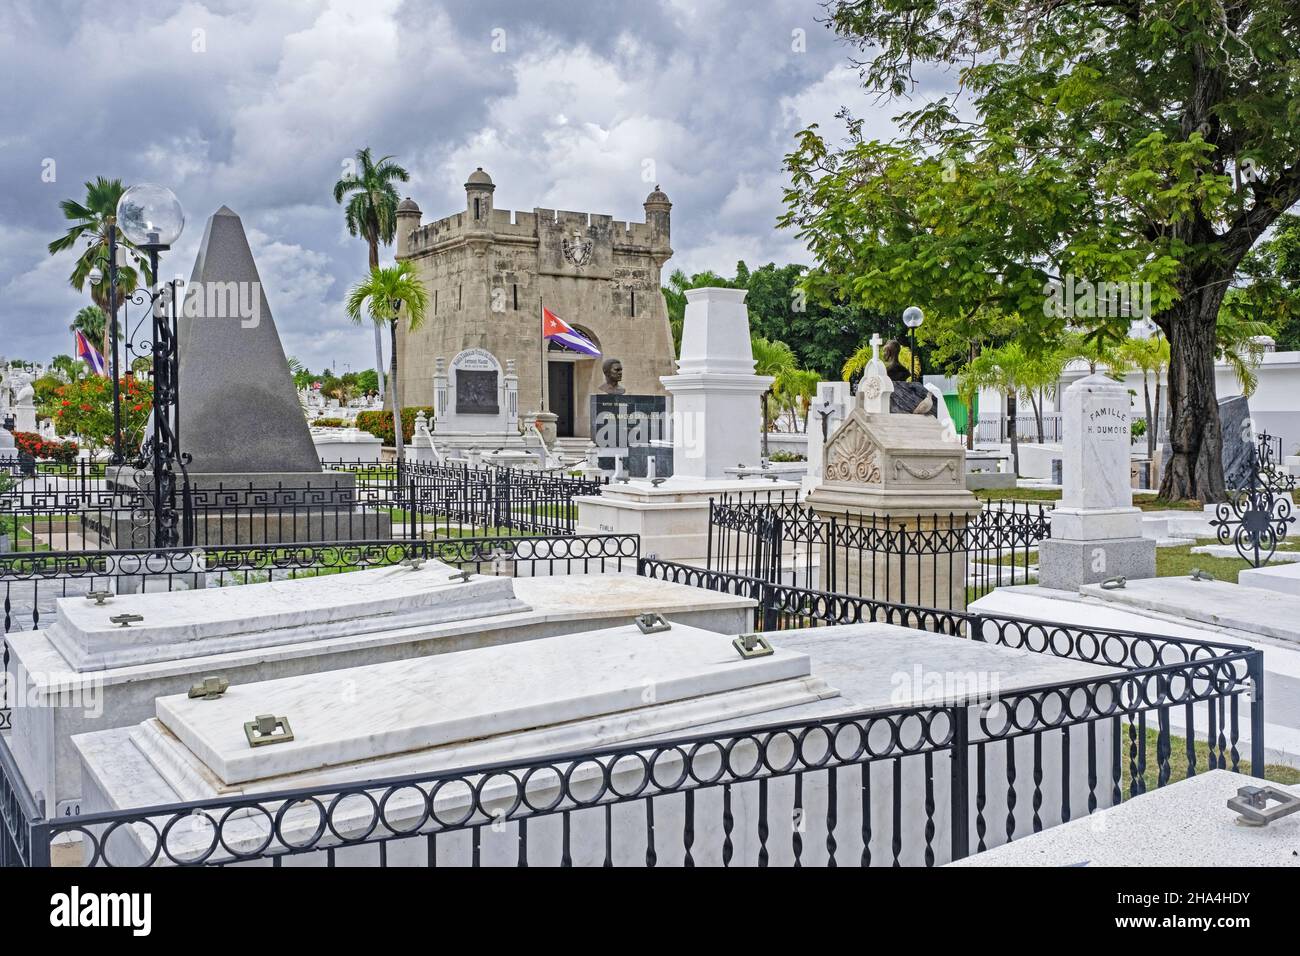 Santa Ifigenia Cemetery with final resting places of famous Cubans like Fidel Casto and José Martí in Santiago de Cuba on the island Cuba, Caribbean Stock Photo